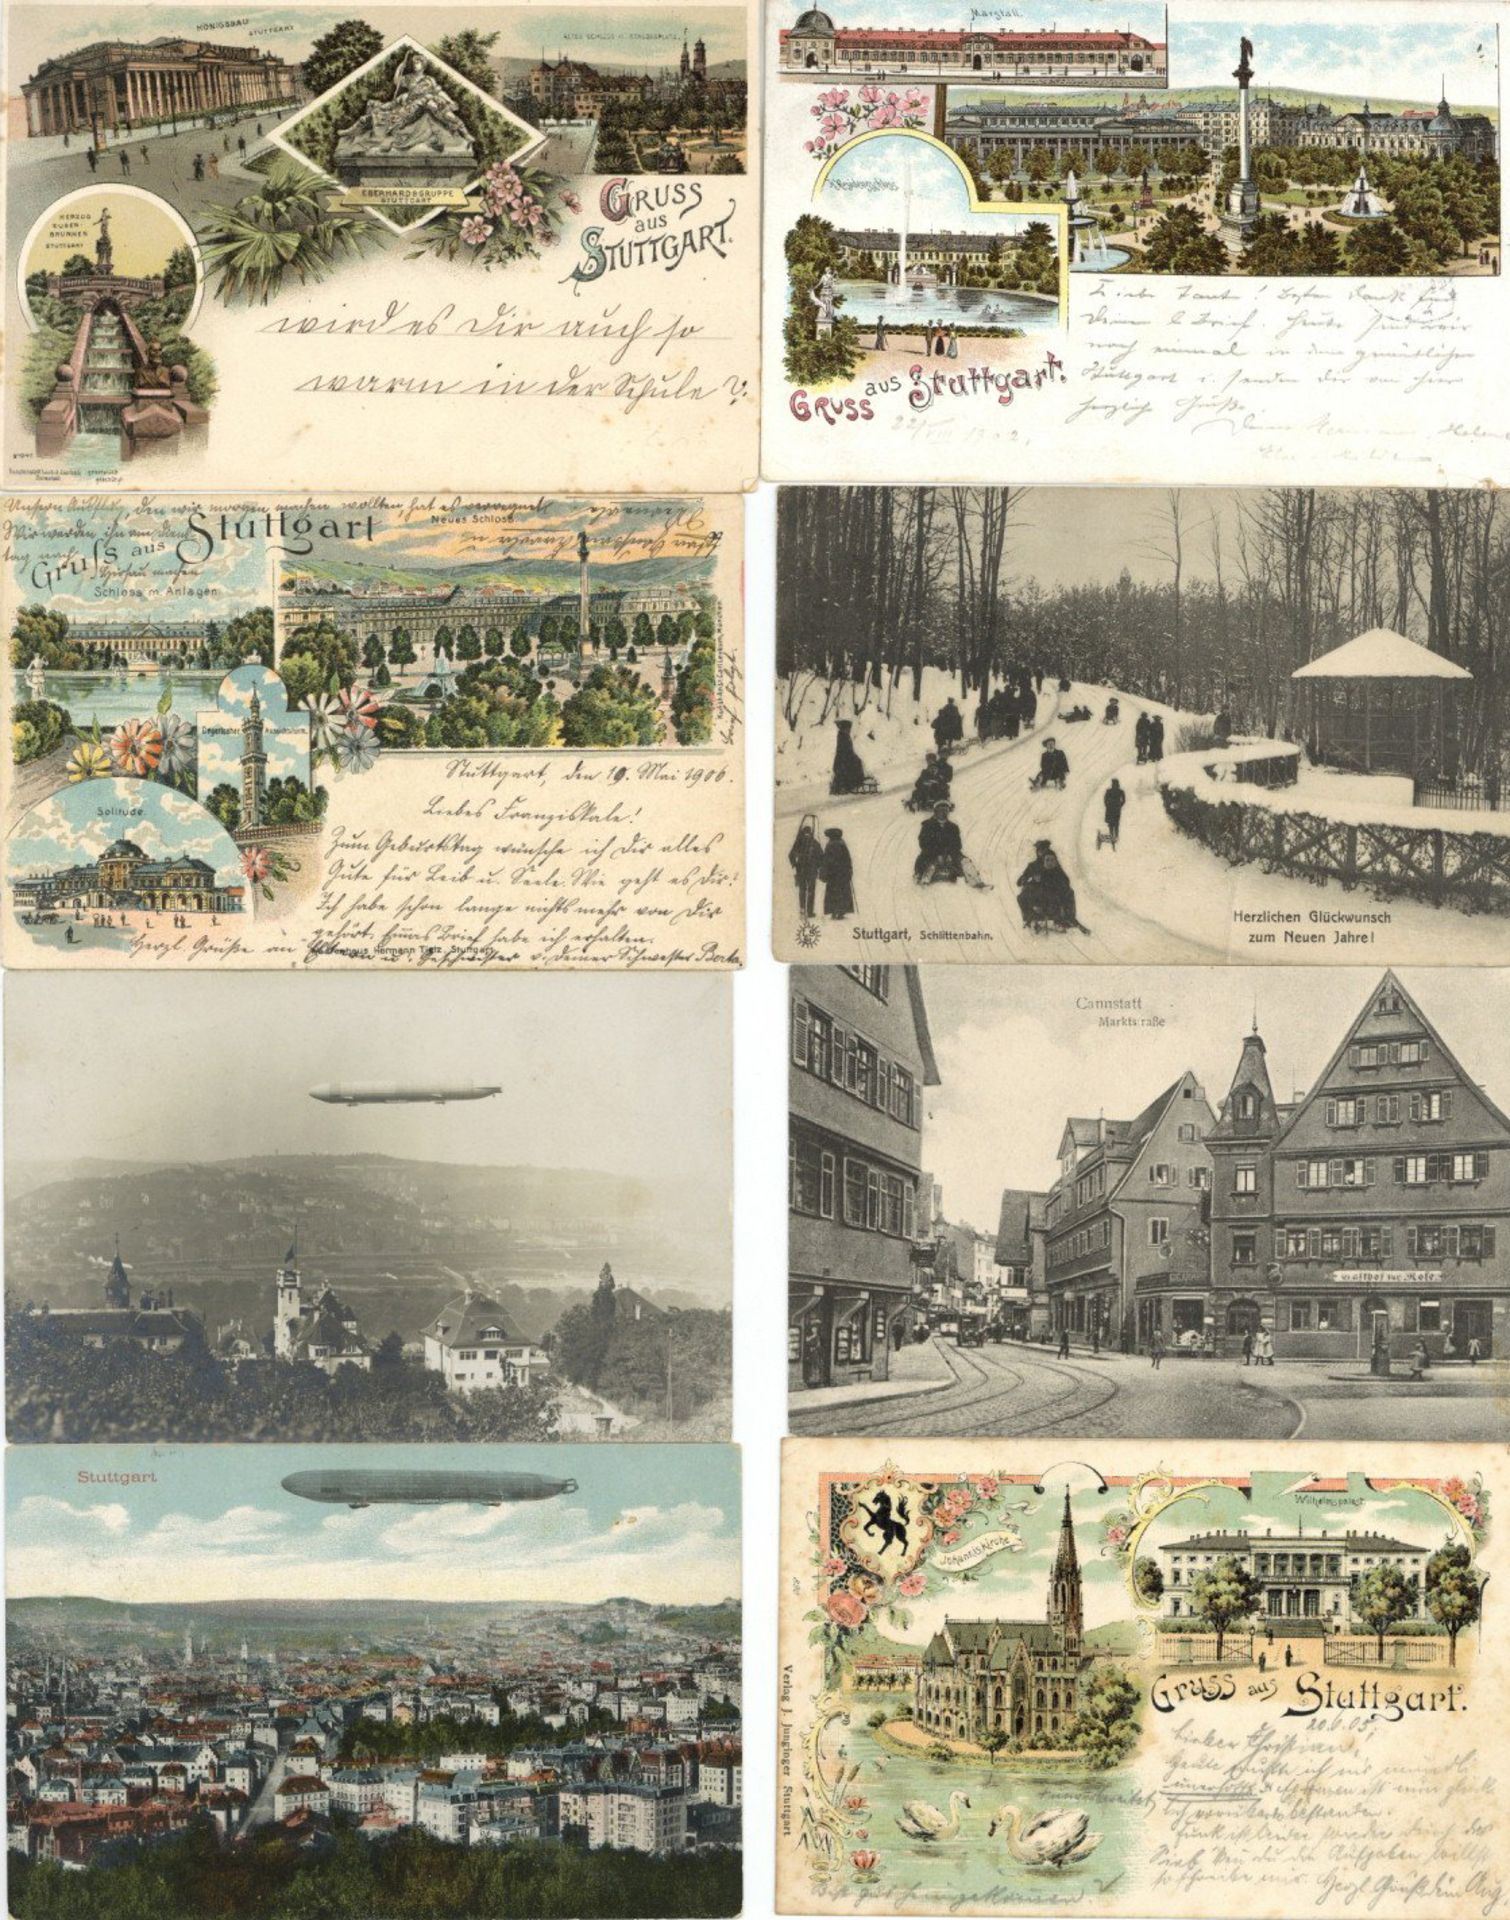 Stuttgart (7000) Sammlung mit 2 Alben insg. circa 400 alte Ansichtskarten, darunter auch einige